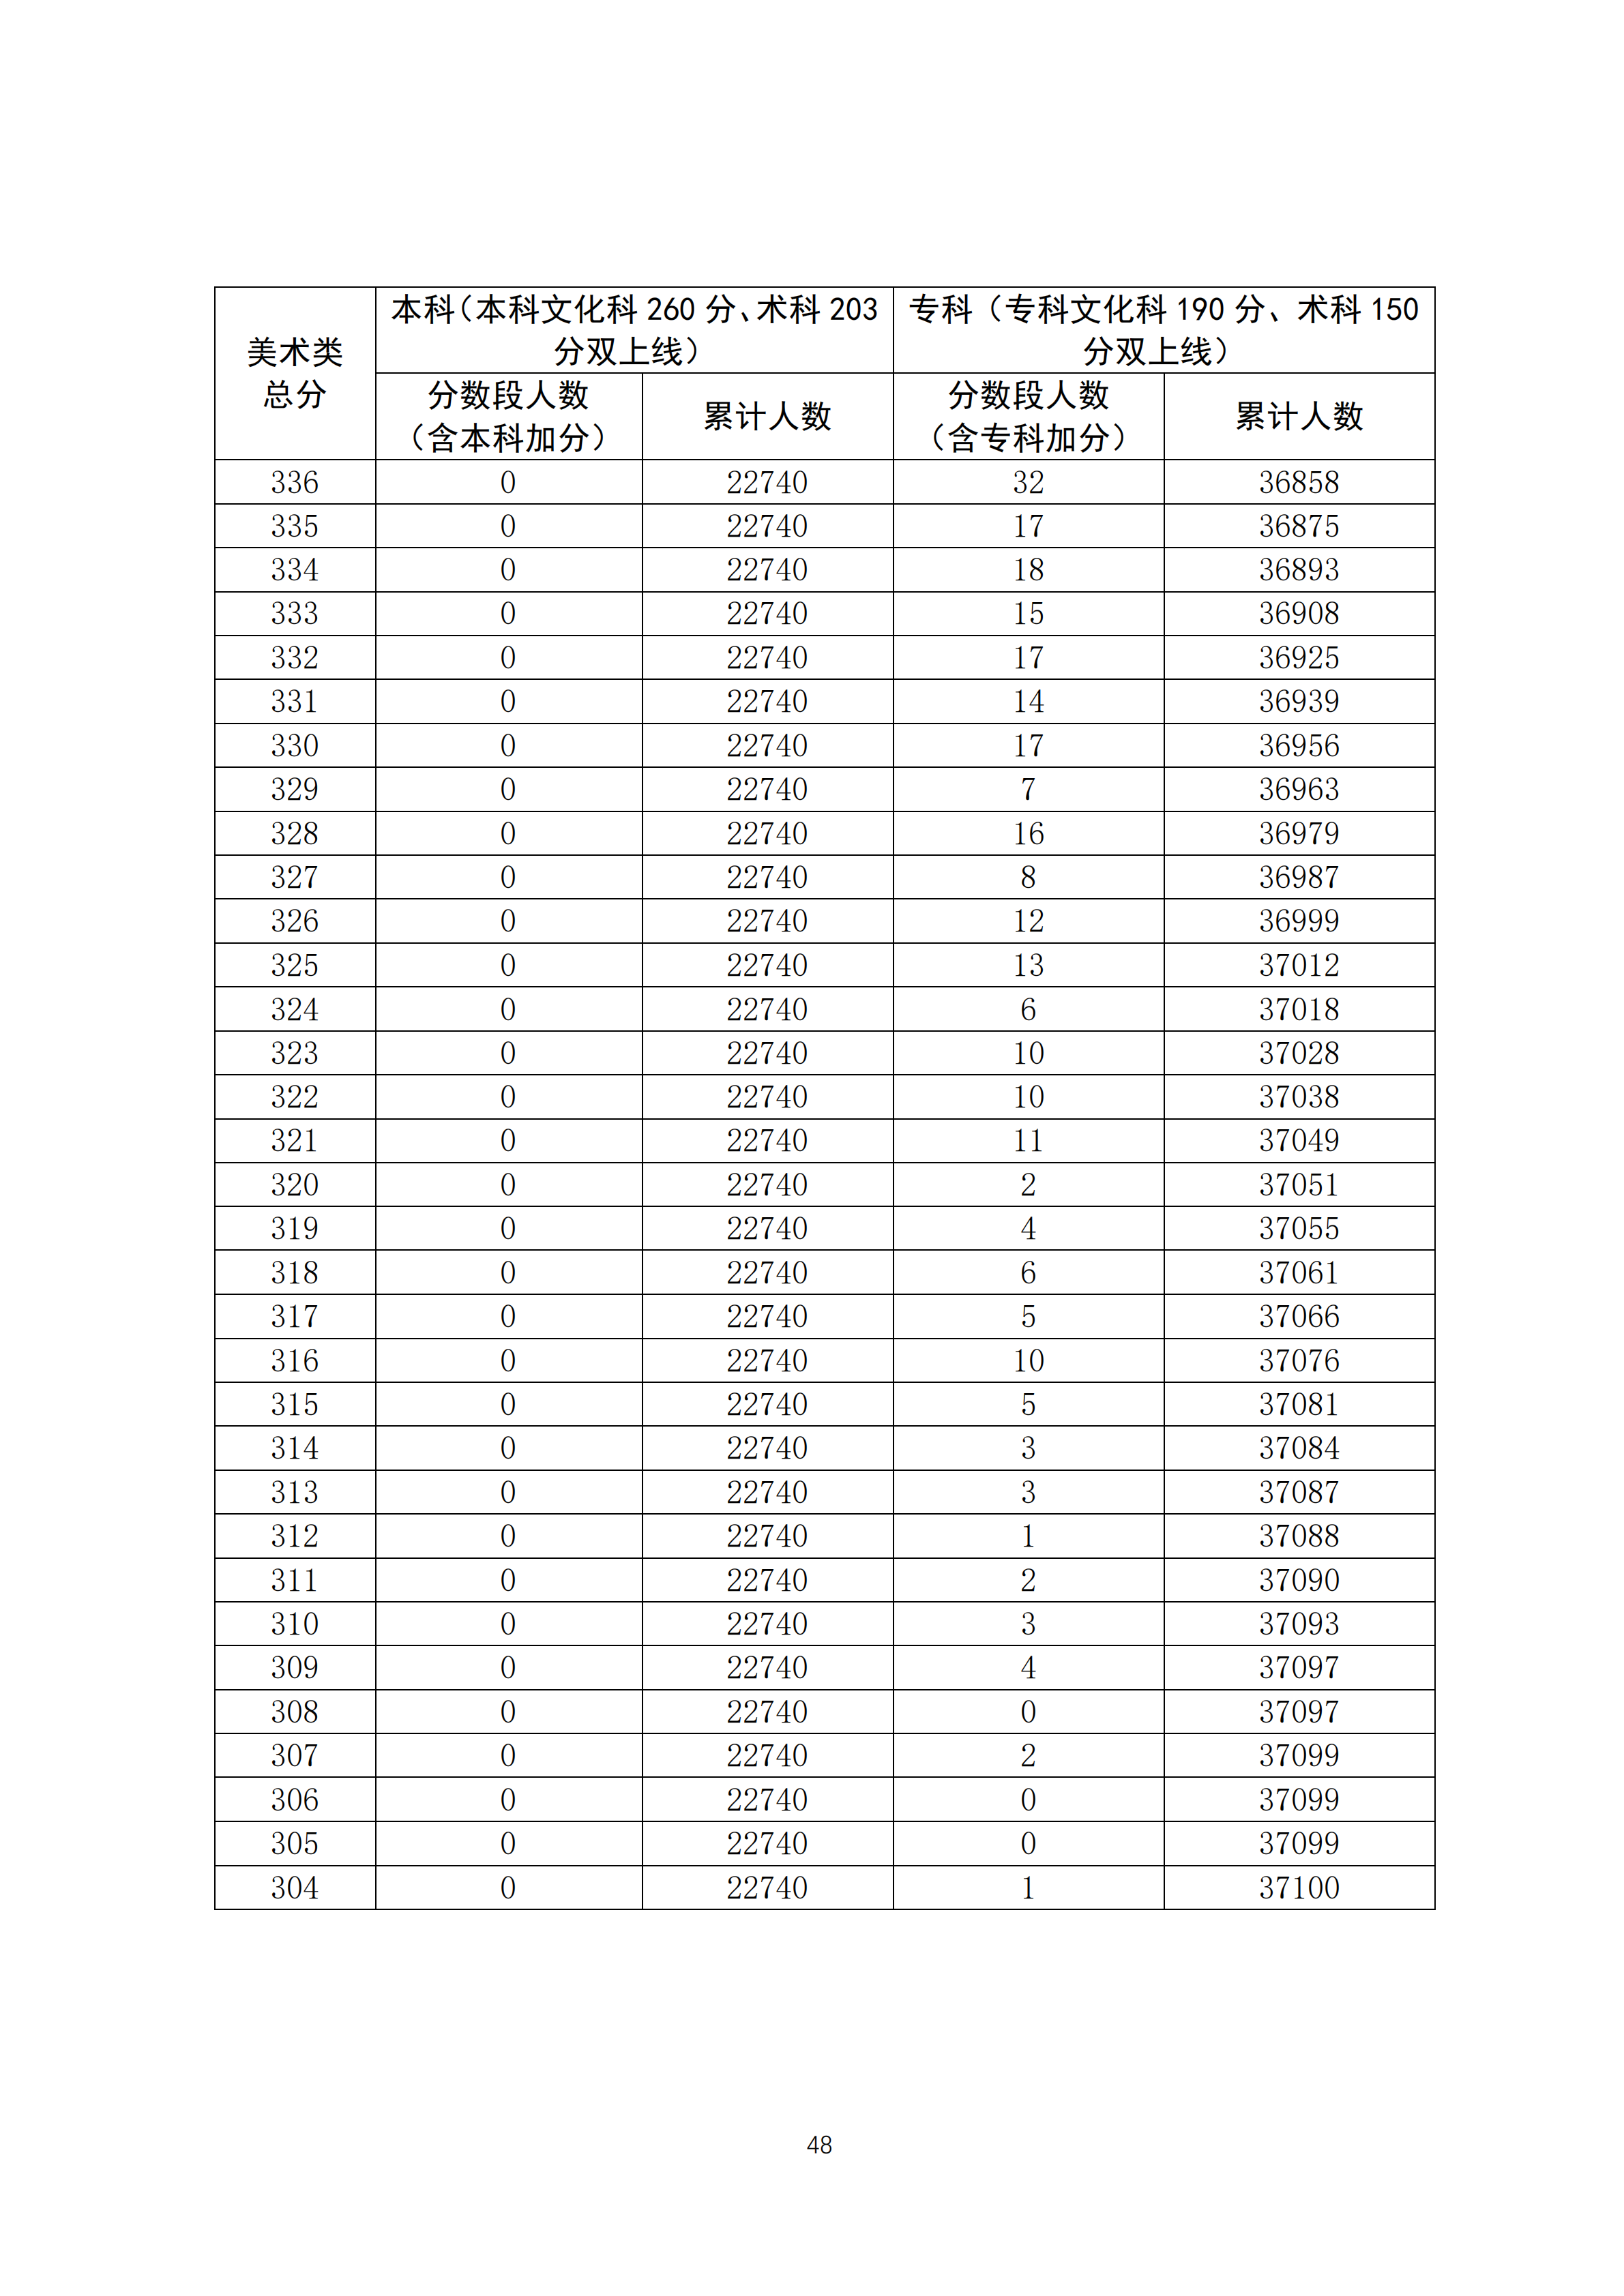 2020广东高考一分一段表 美术类成绩排名及分数段人数